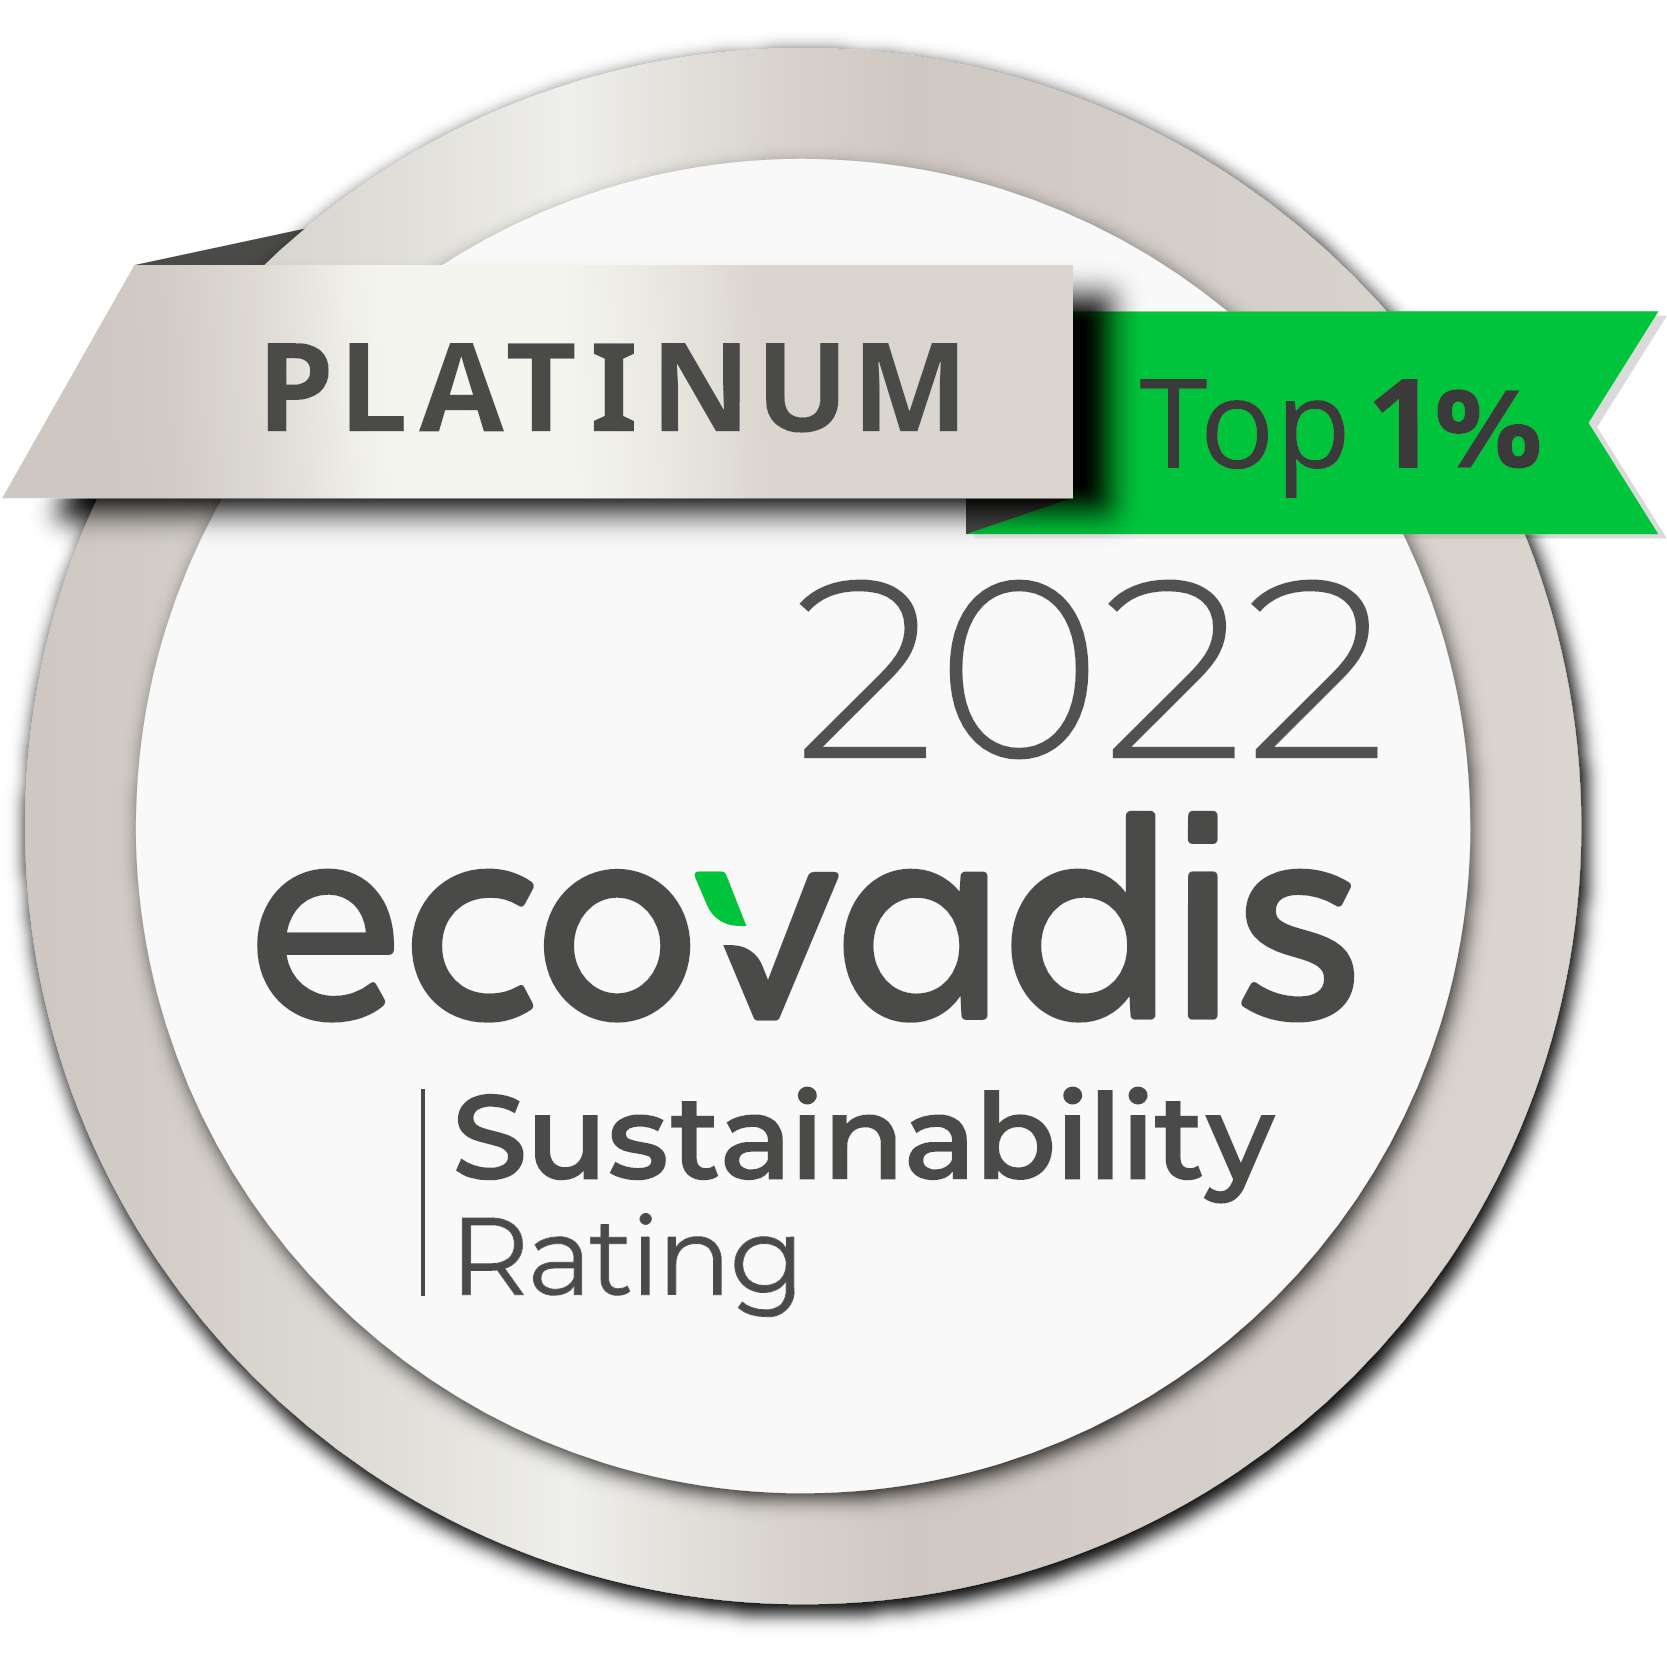 Platinum 2022 Ecovadis Sustainability Rating